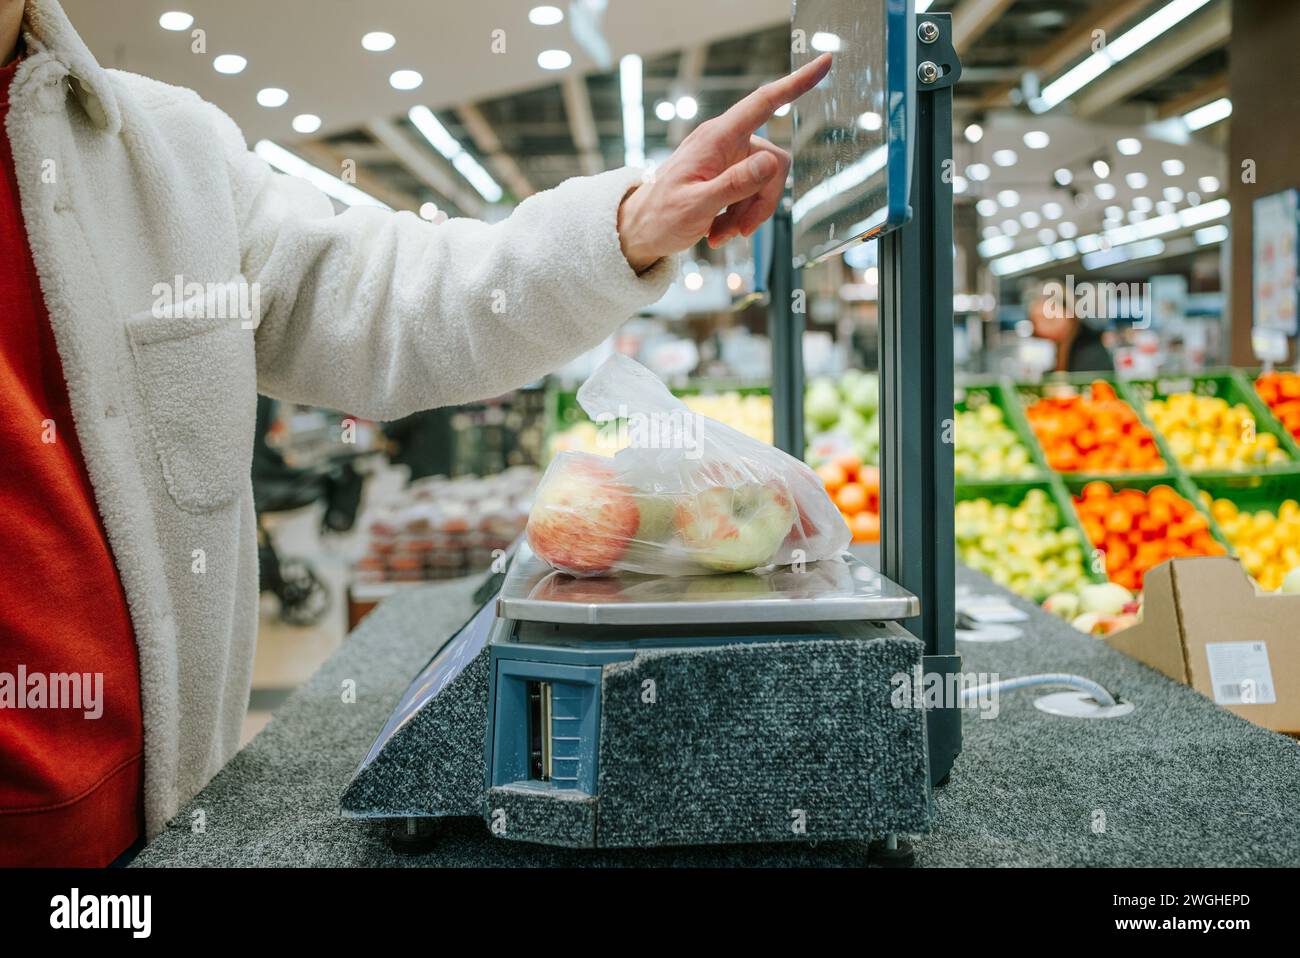 Der Finger des Mannes wählt das gewünschte Produkt im Supermarkt auf dem Touchscreen der elektronischen Waage aus. Person, die eine Tüte Äpfel an der Kasse eines Supermarktes wiegt. Stockfoto